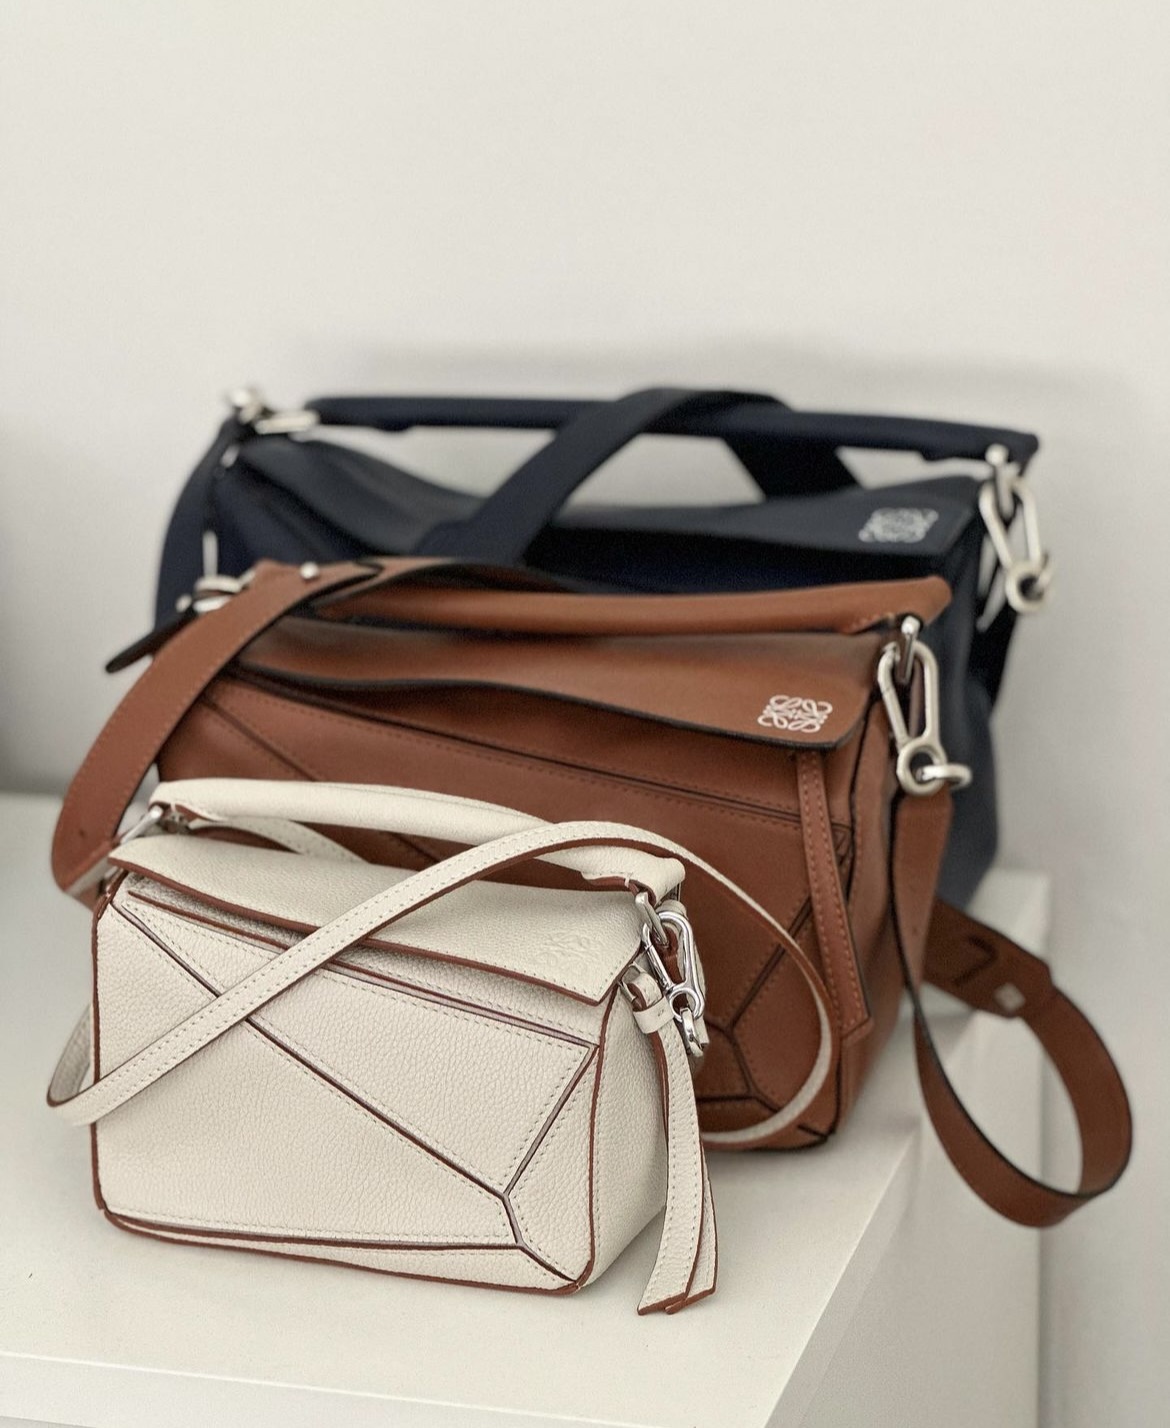 Help me pick- Loewe small puzzle! : r/handbags